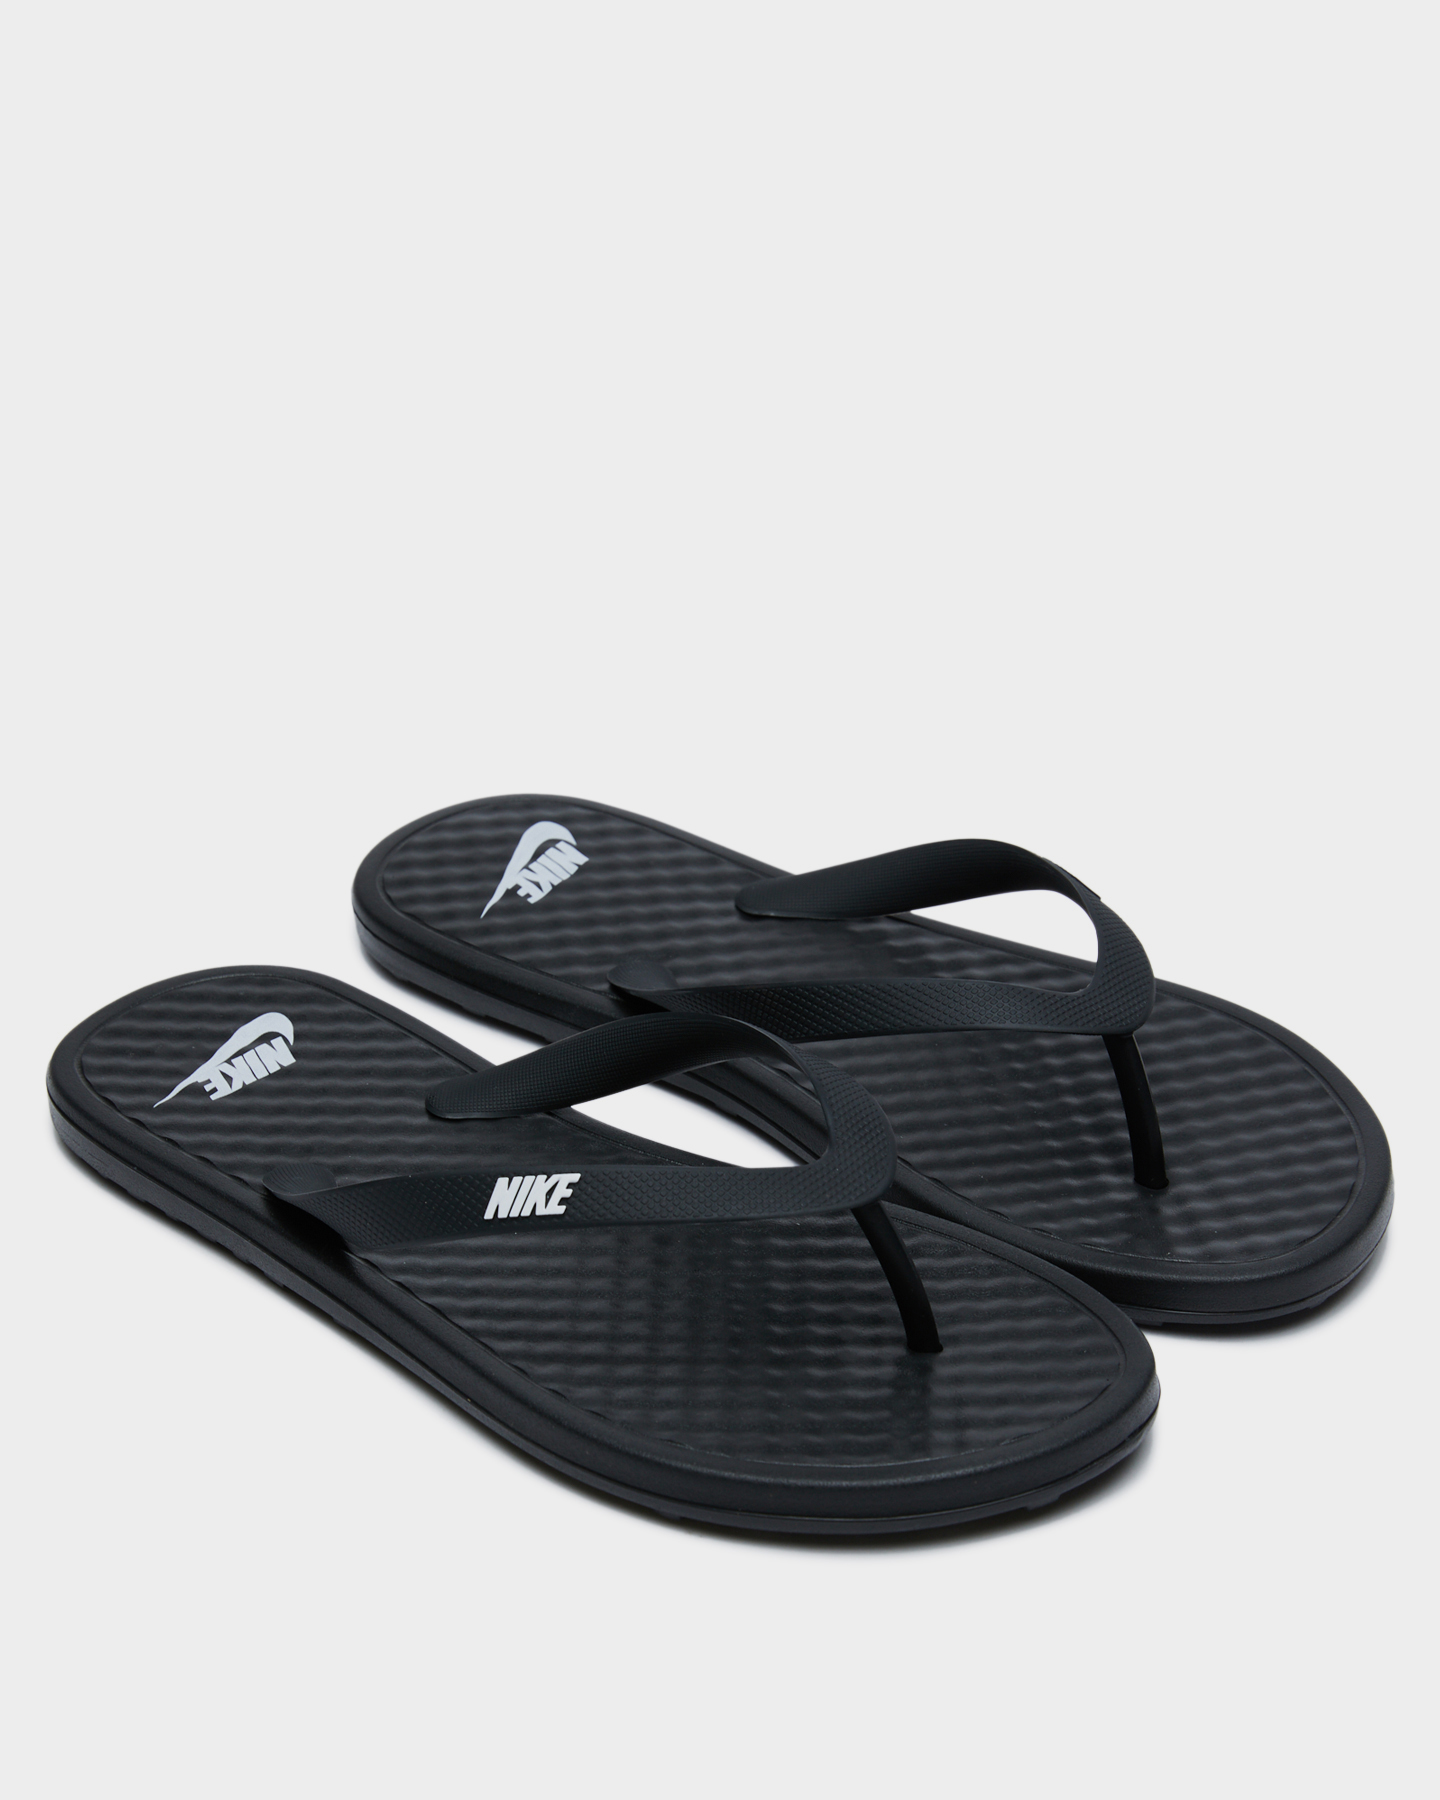 Nike On Deck Flip Flop - Black Black | SurfStitch